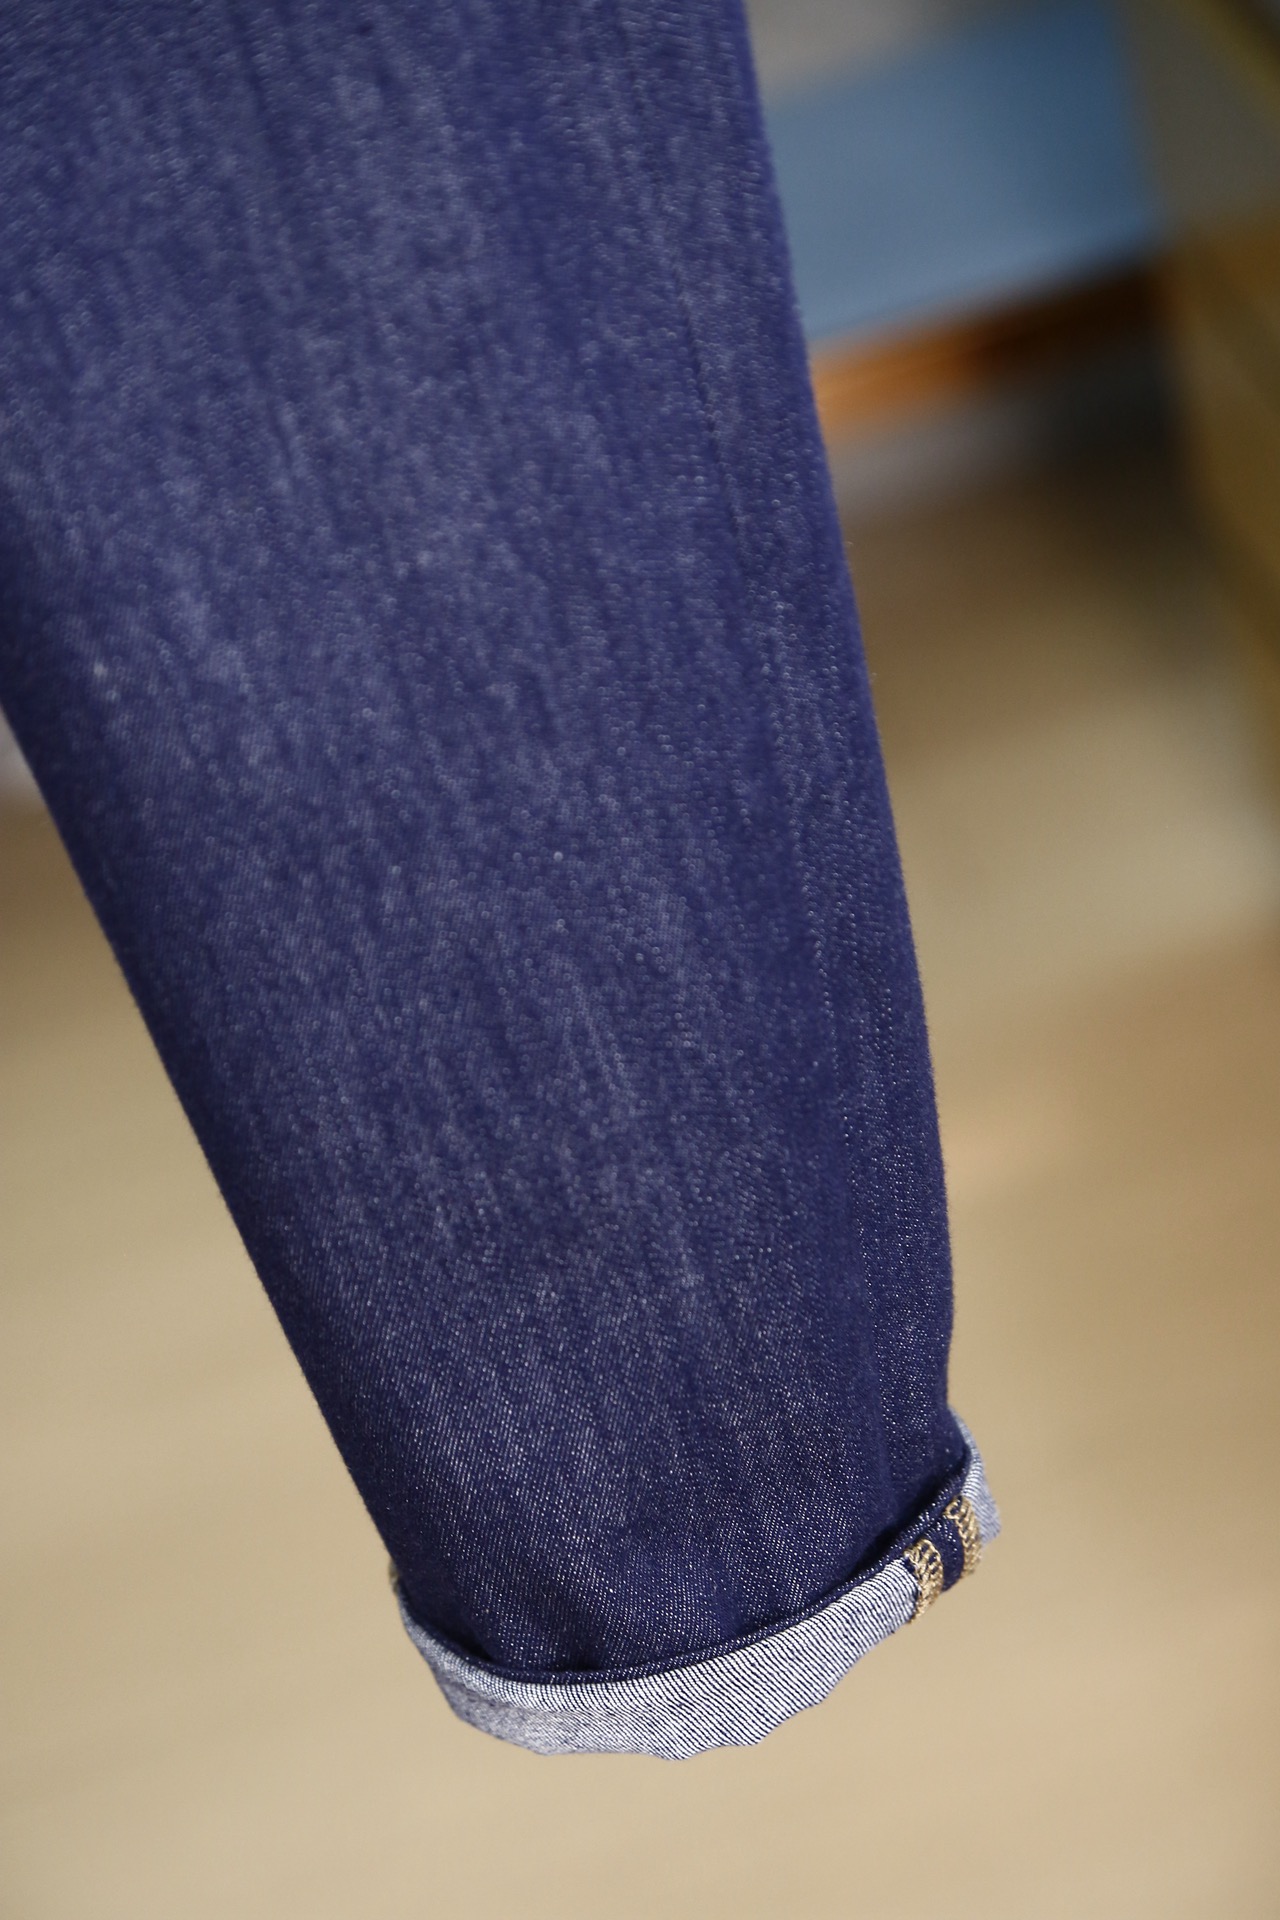 Fendi芬迪/新款来袭1964春夏新款新款高端定制系列-原版1-1正品定制款-休闲裤牛仔裤高端定制系列